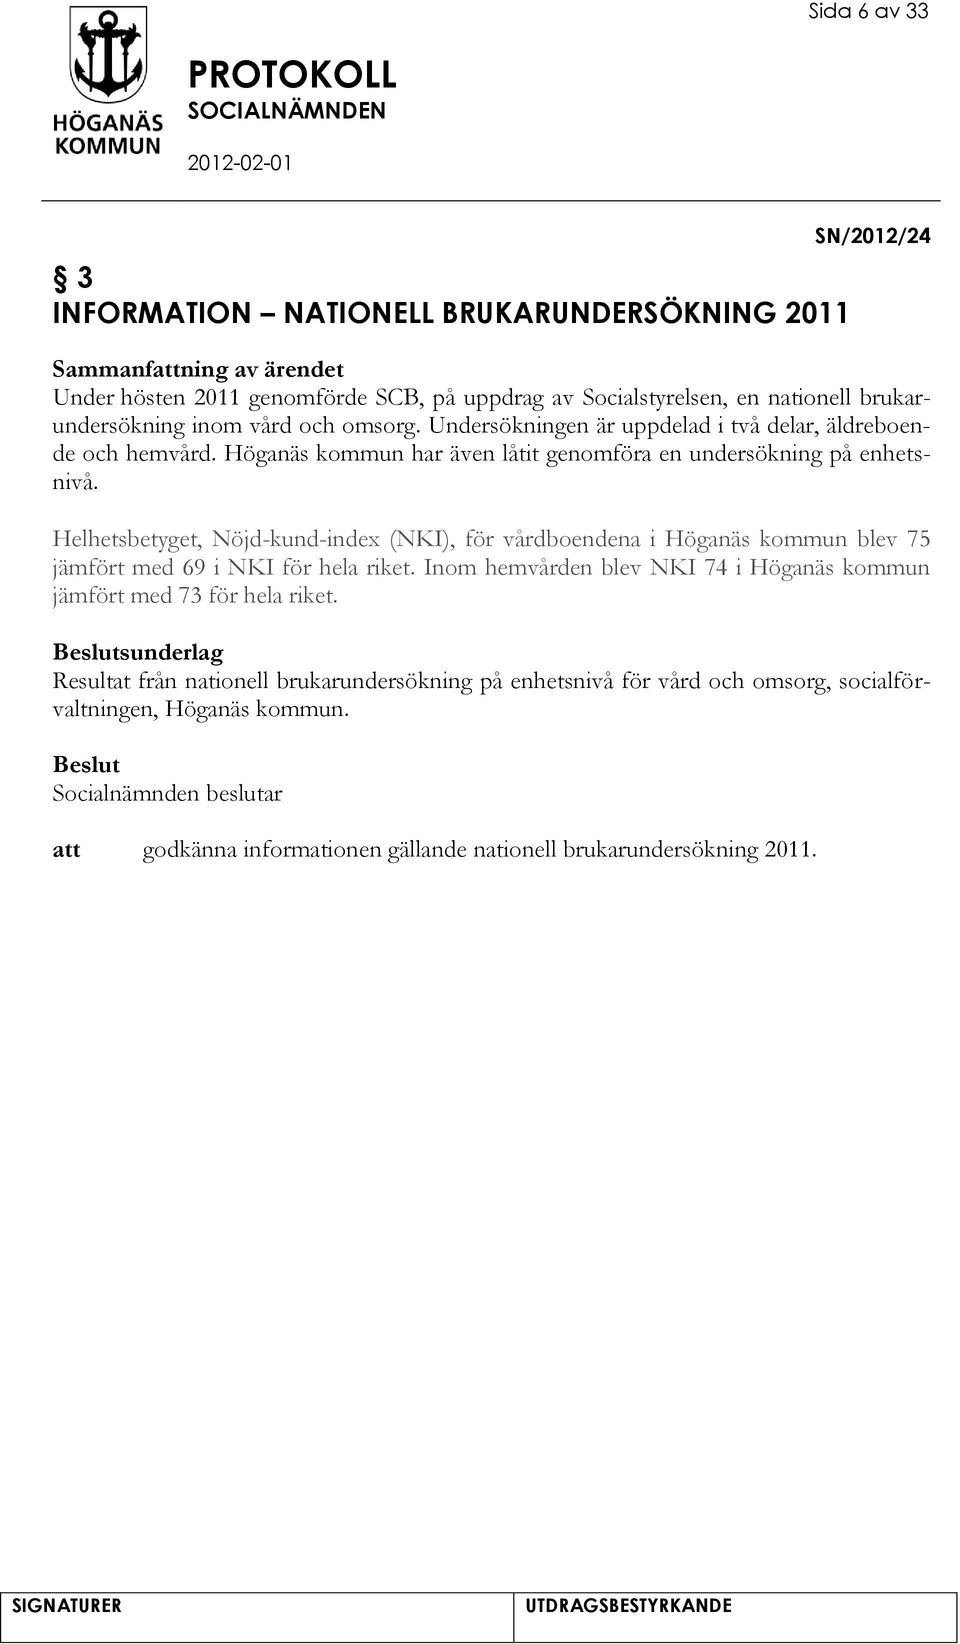 Helhetsbetyget, Nöjd-kund-index (NKI), för vårdboendena i Höganäs kommun blev 75 jämfört med 69 i NKI för hela riket.